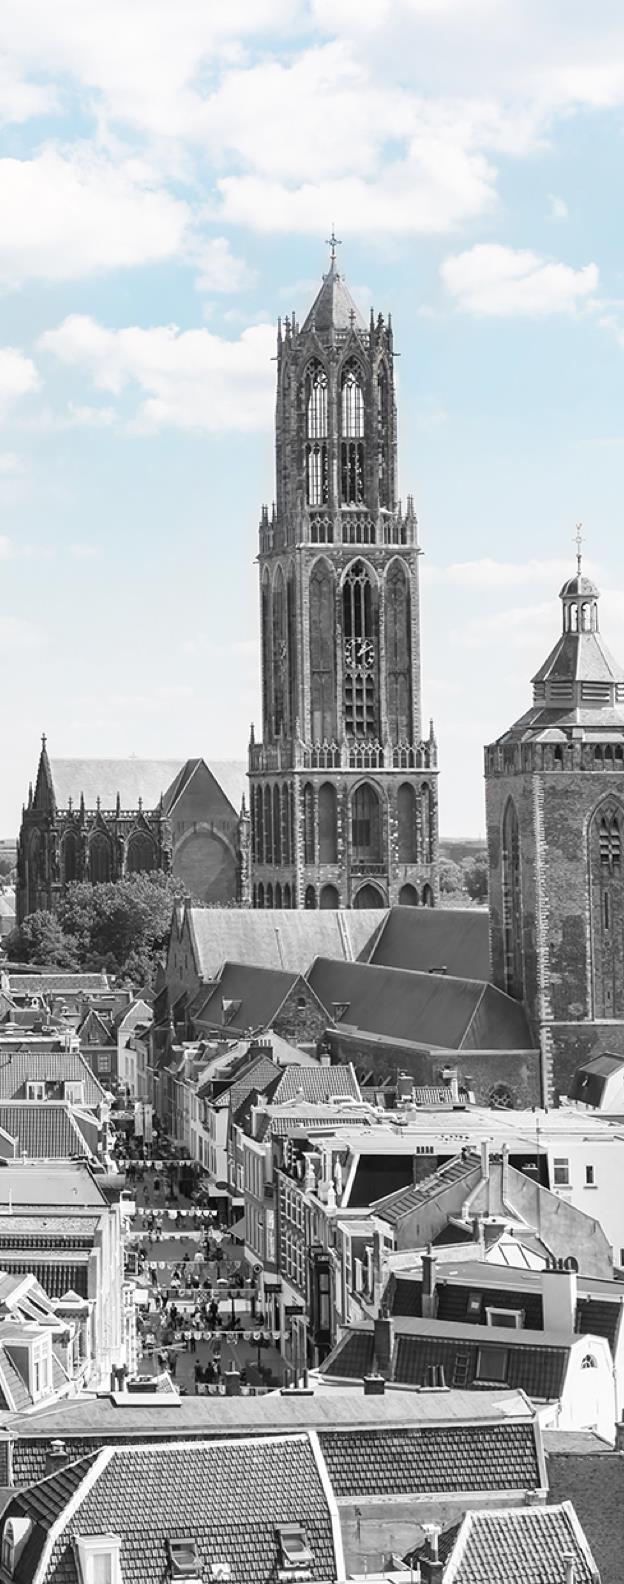 Utrecht modelregio voor zelfmanagement Jaap Trappenburg